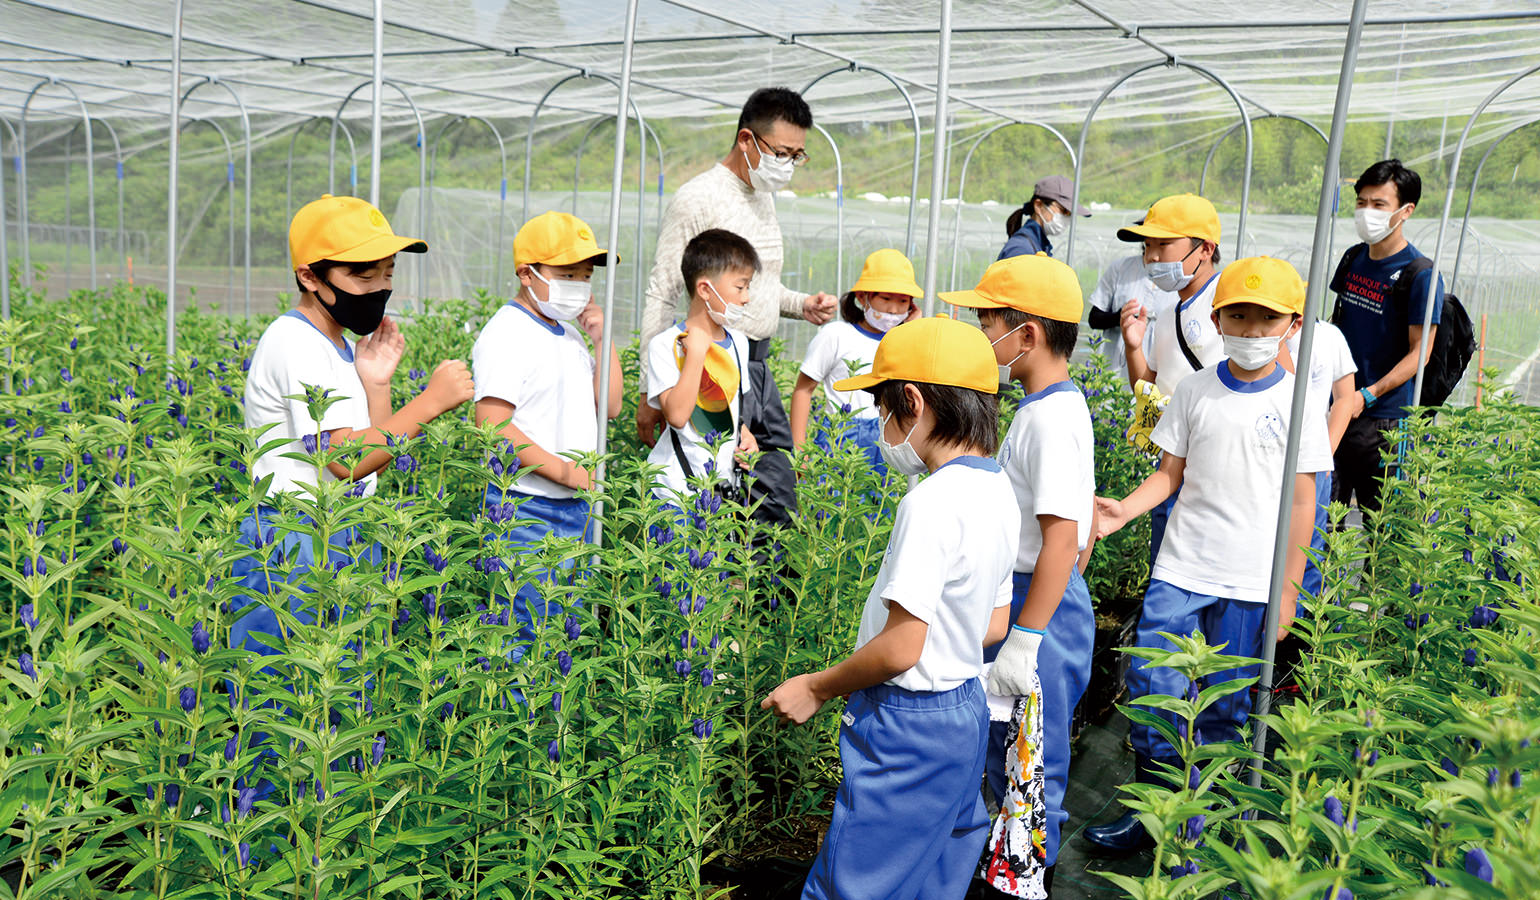 リンドウの収穫体験を通じて児童に花の魅力を伝える